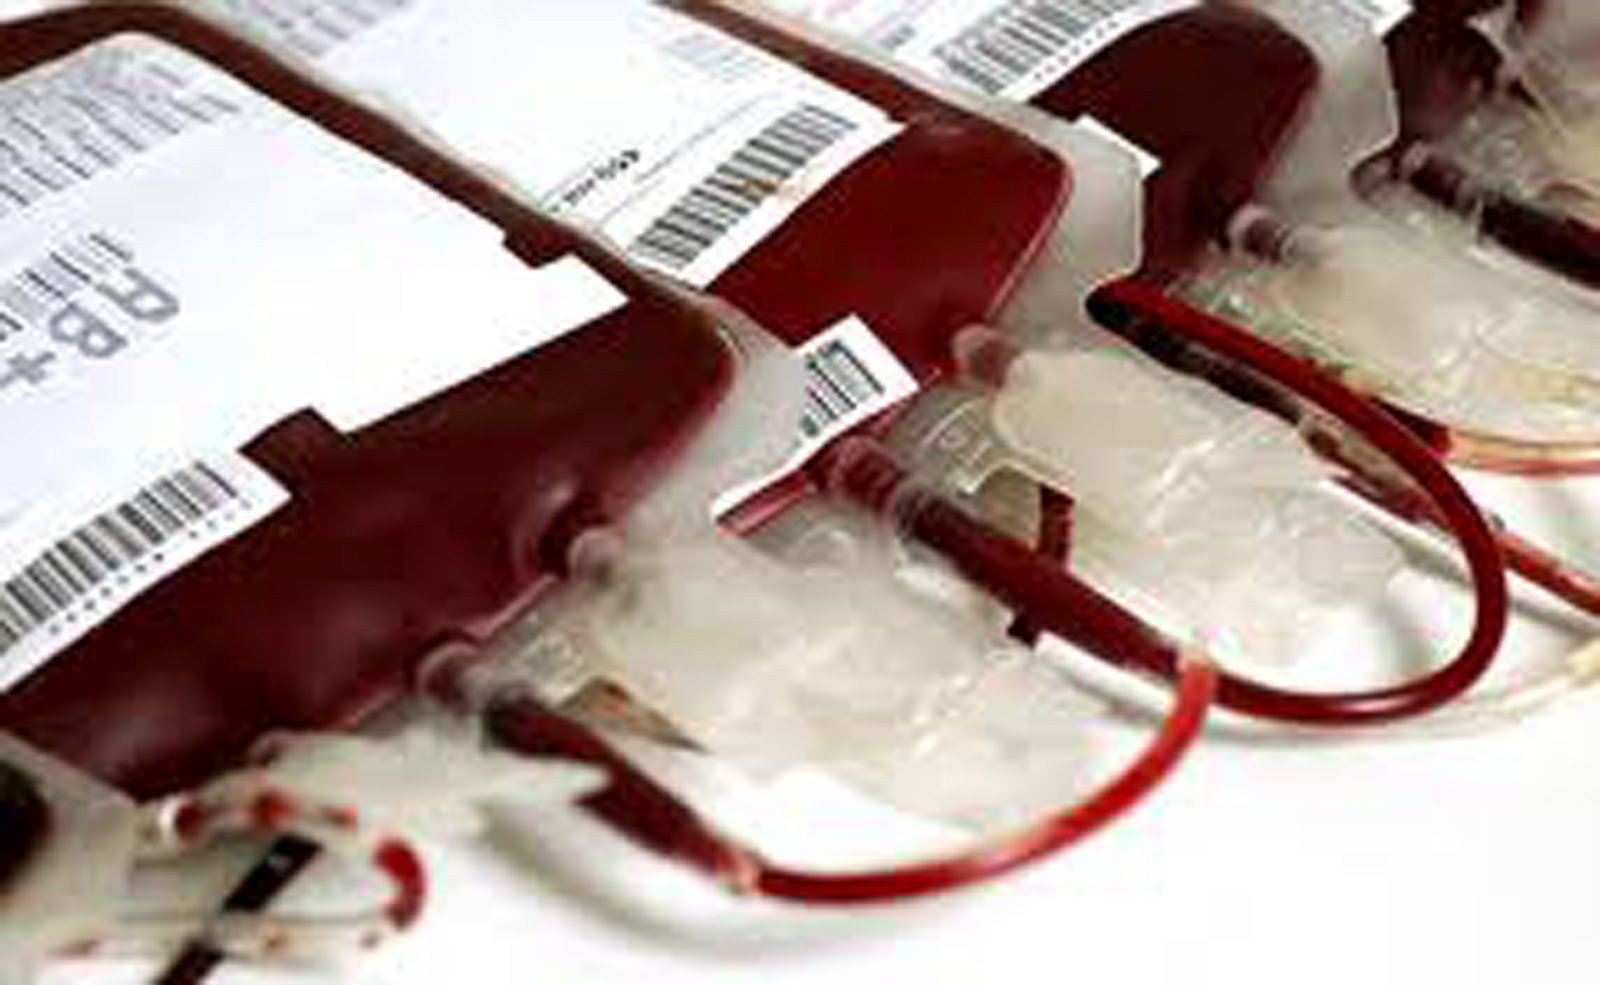 ΕΙΝΑΠ: Κενό γράμμα οι υποσχέσεις της ηγεσίας για αναμόρφωση του συστήματος αιμοδοσίας